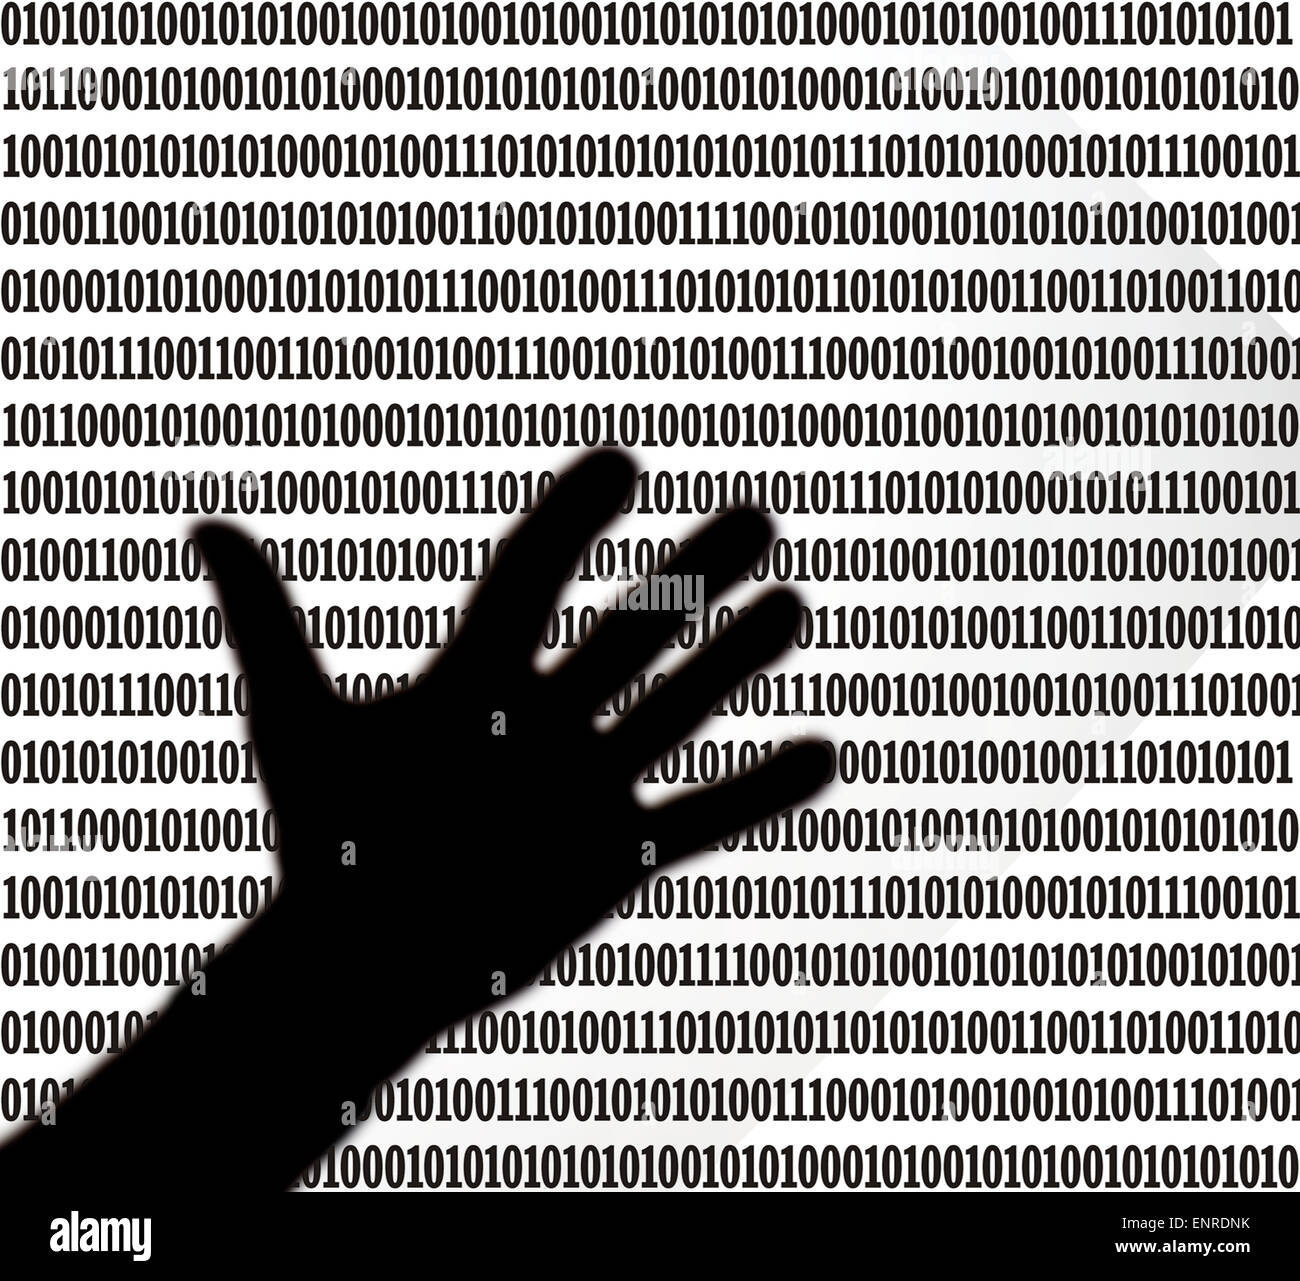 La silhouette du côté planant au-dessus d'une feuille de code binaire Banque D'Images